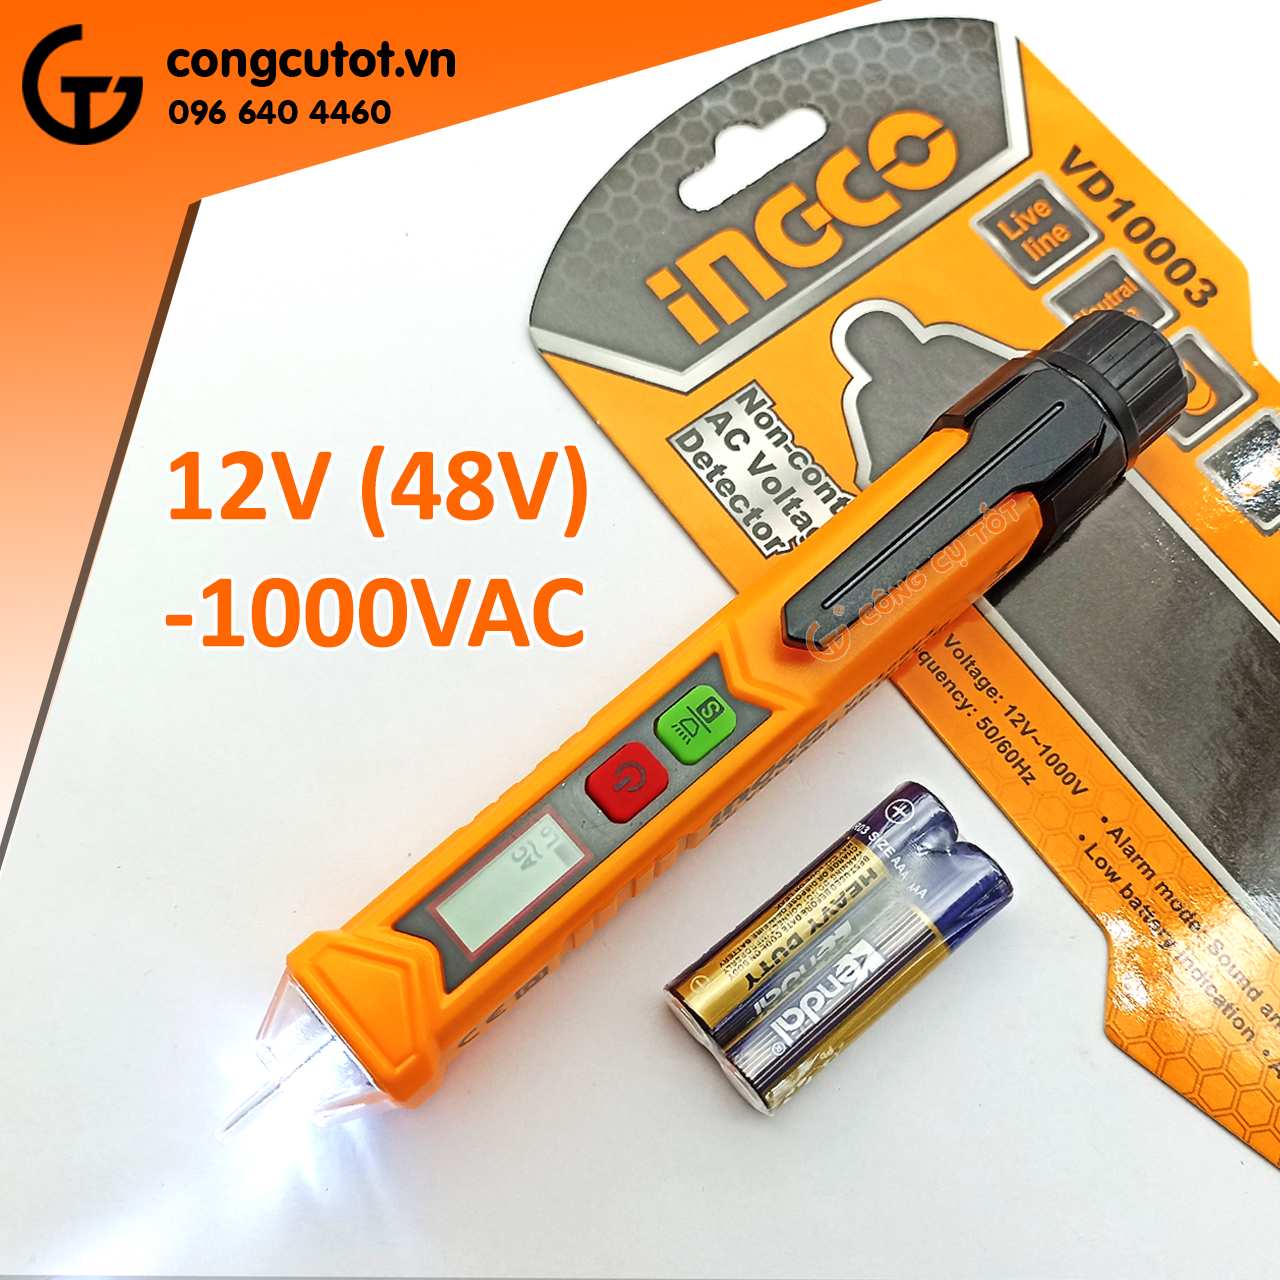 Bút thử điện cảm ứng 12-1000VAC Ingco VD10003